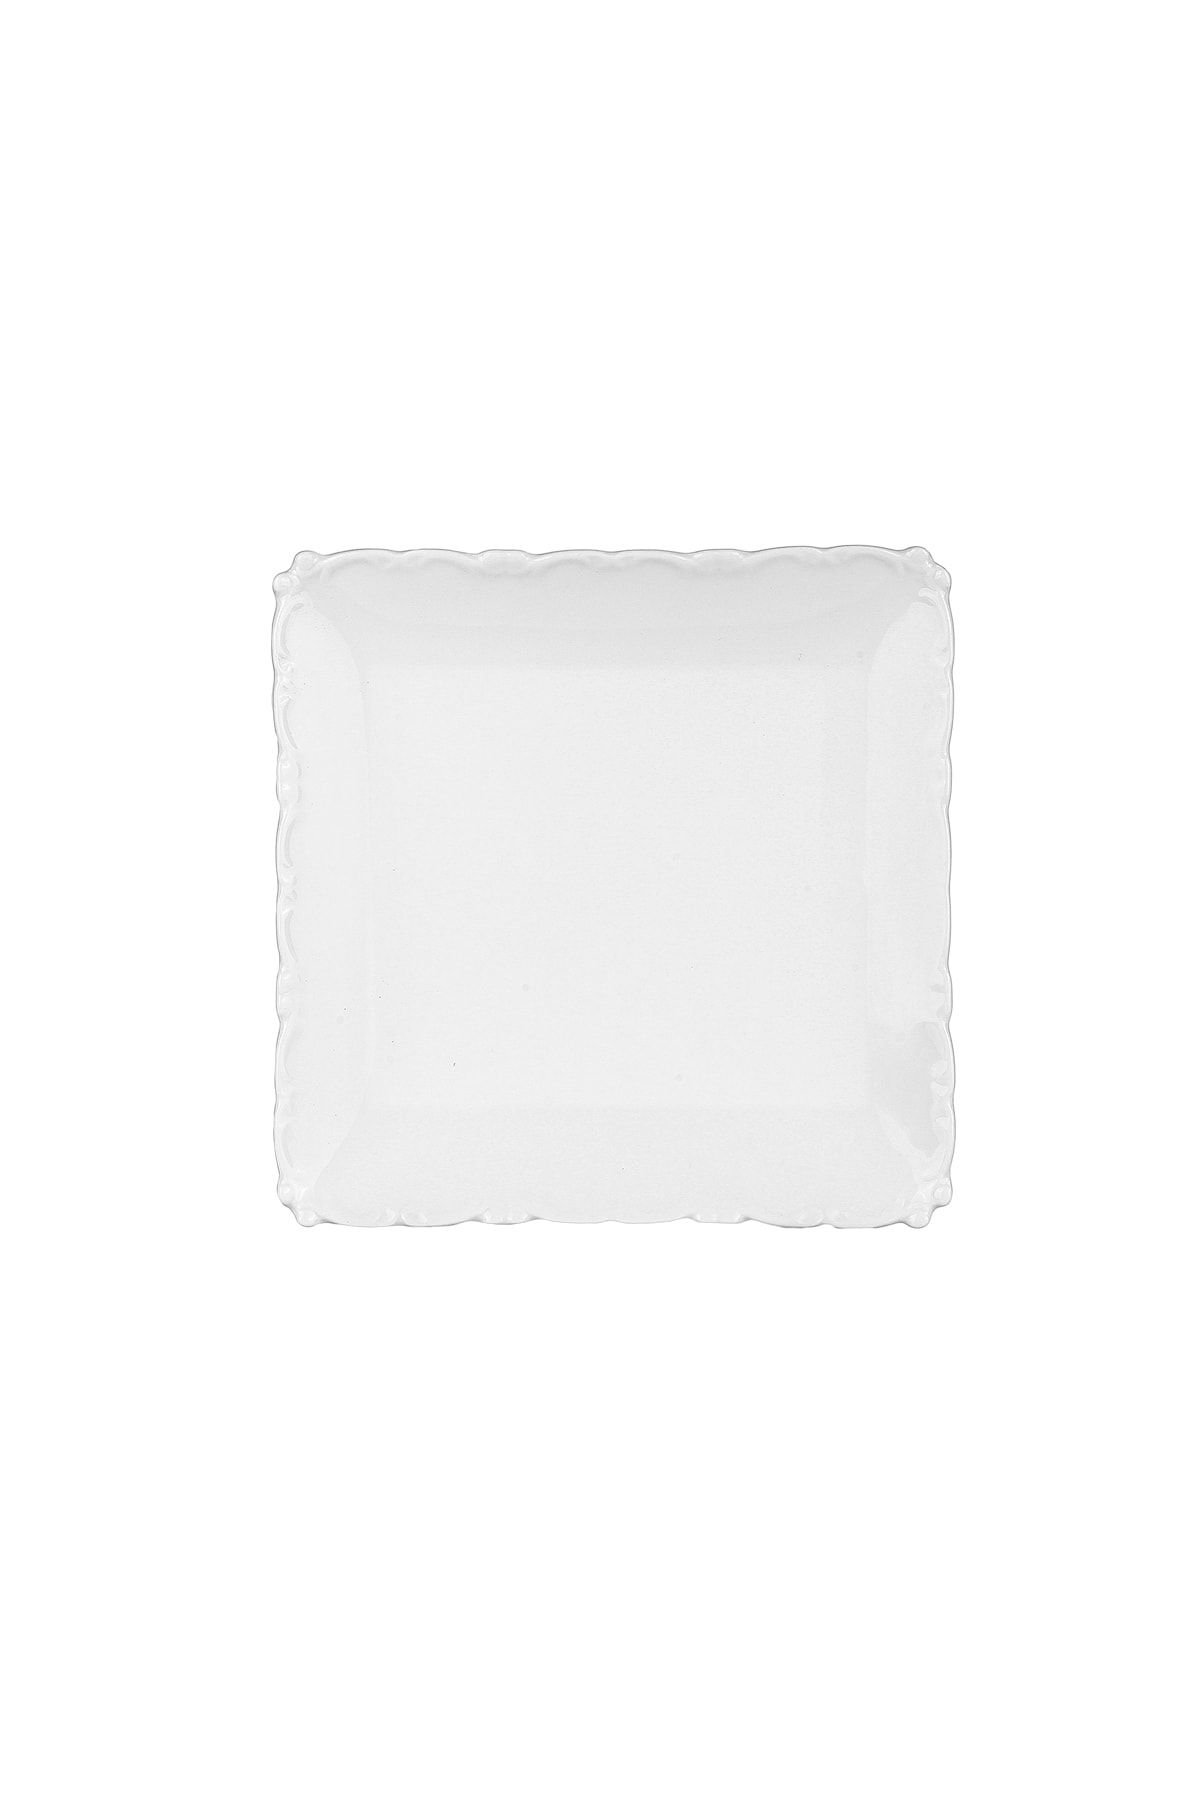 Karaca Ivy Pasta Tabağı 15.2x15.2x2 cm